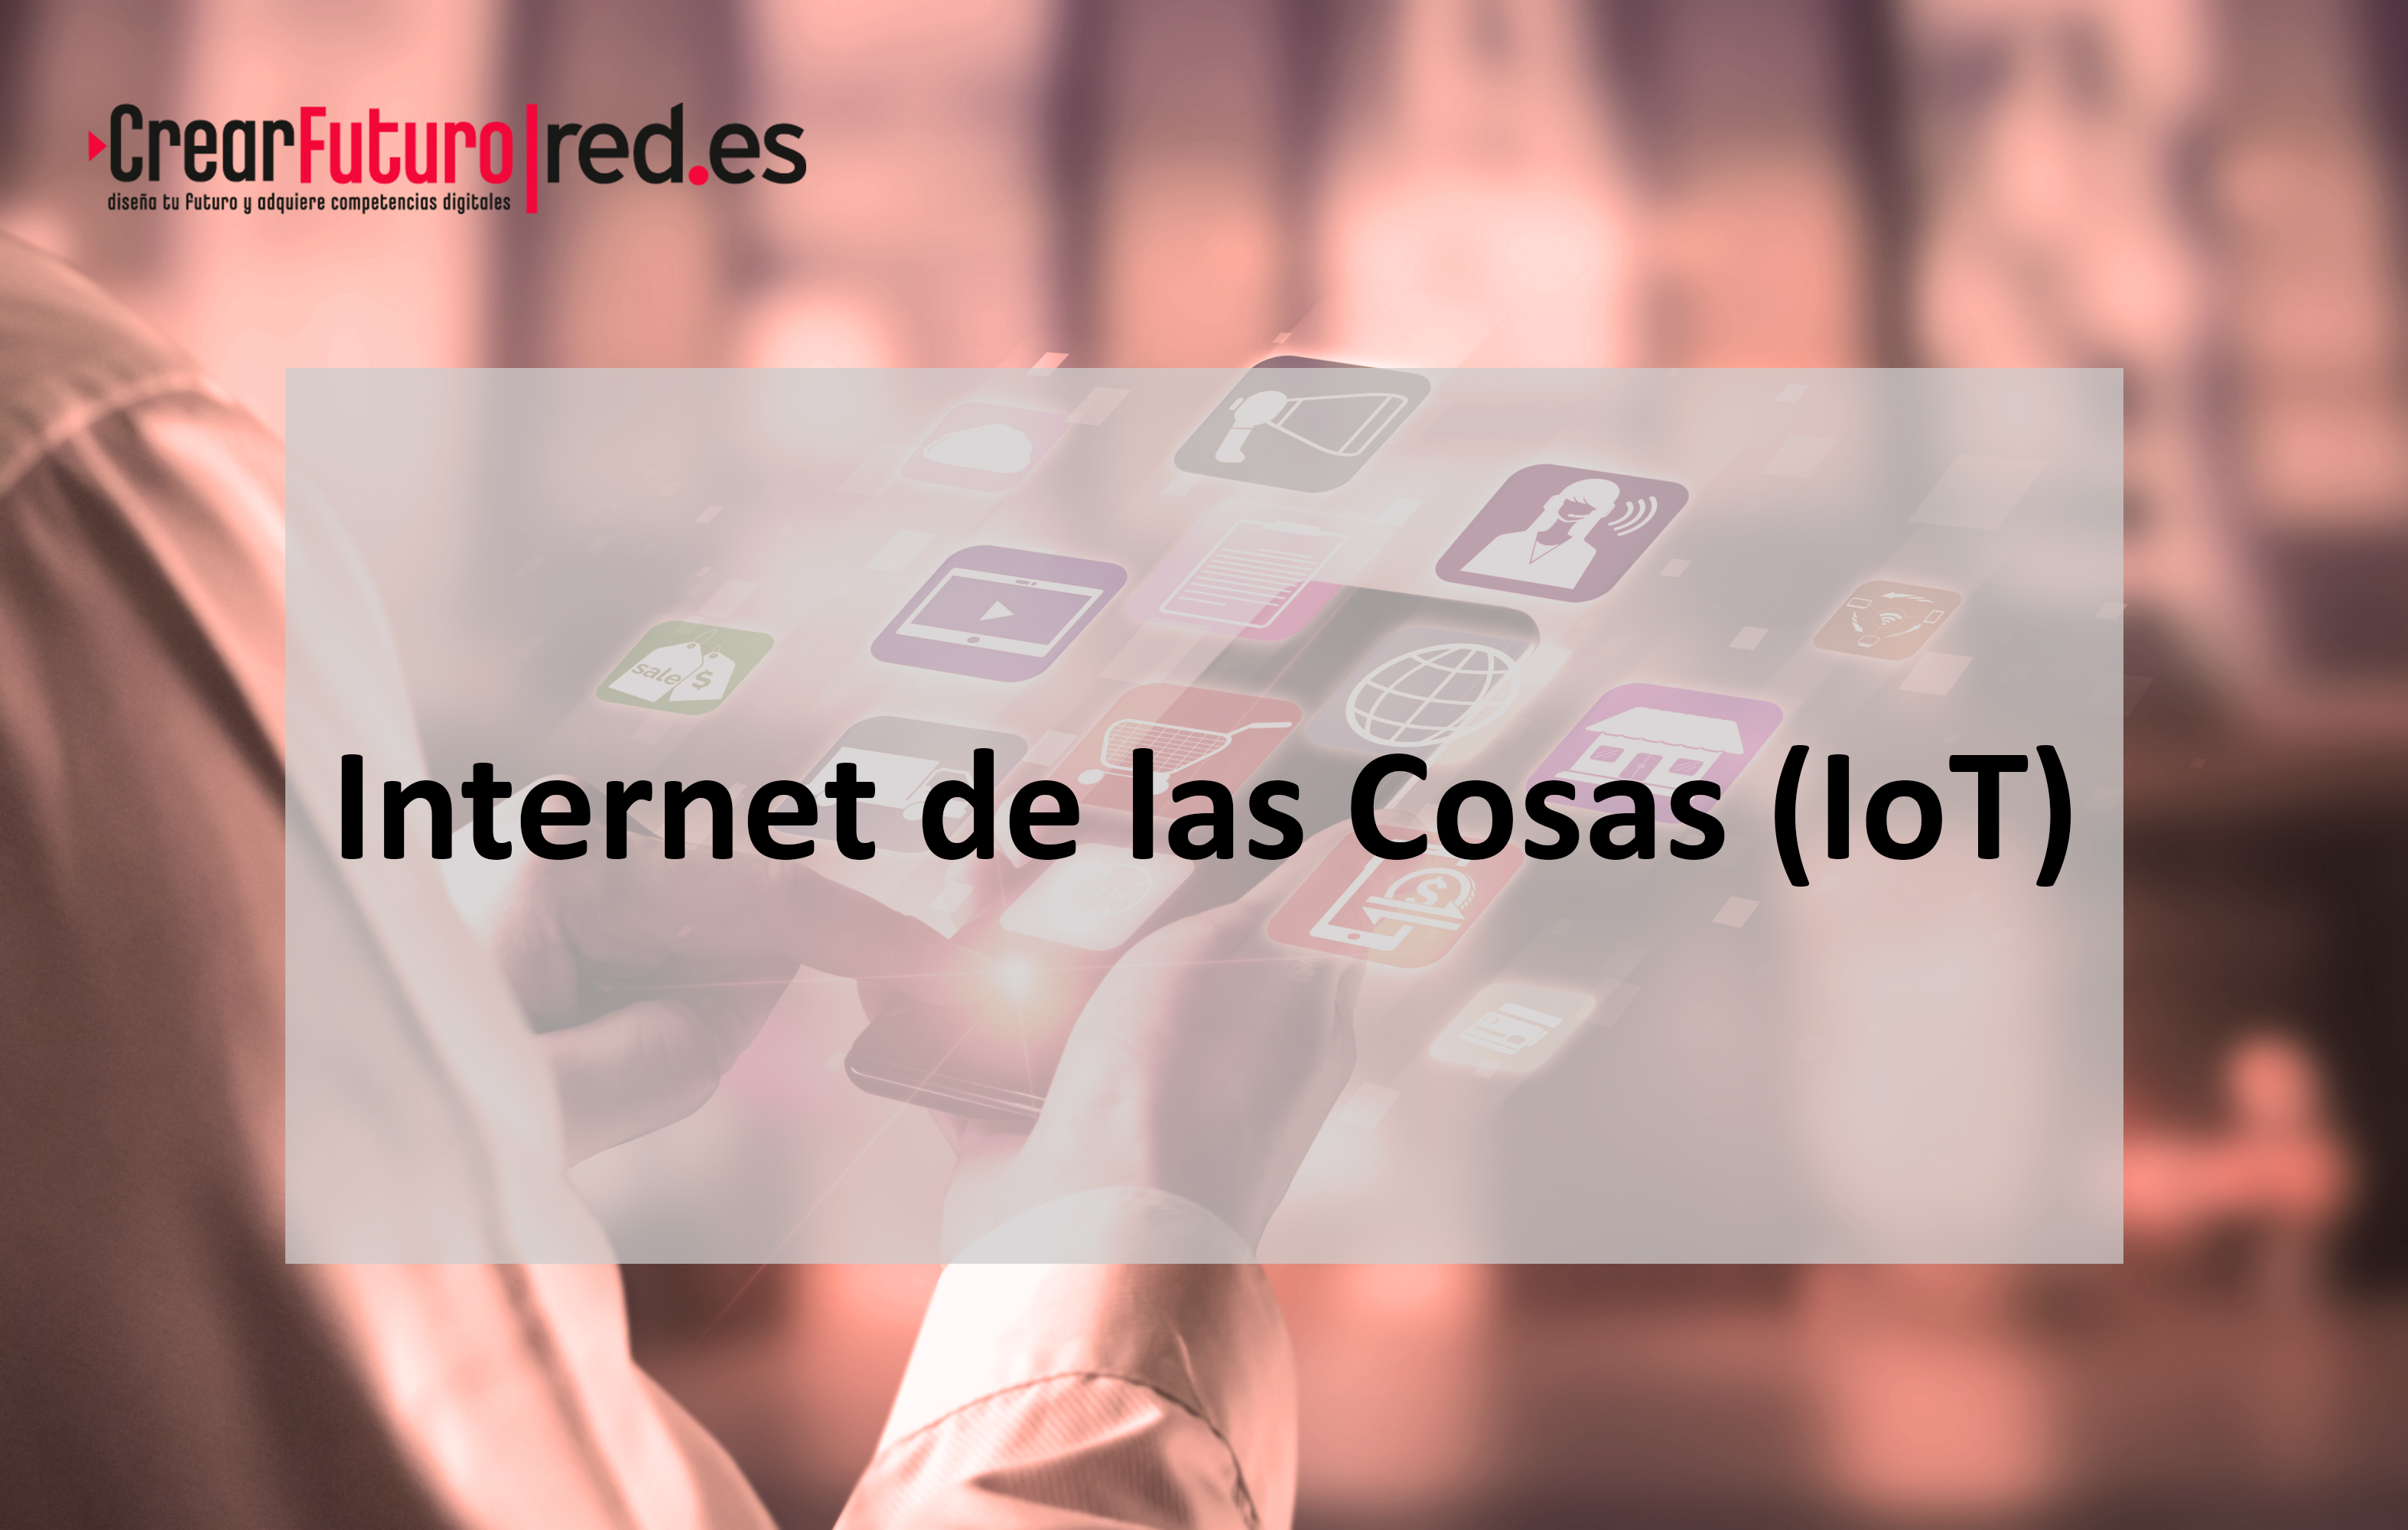 INTERNET DE LAS COSAS (IoT) A9RD002